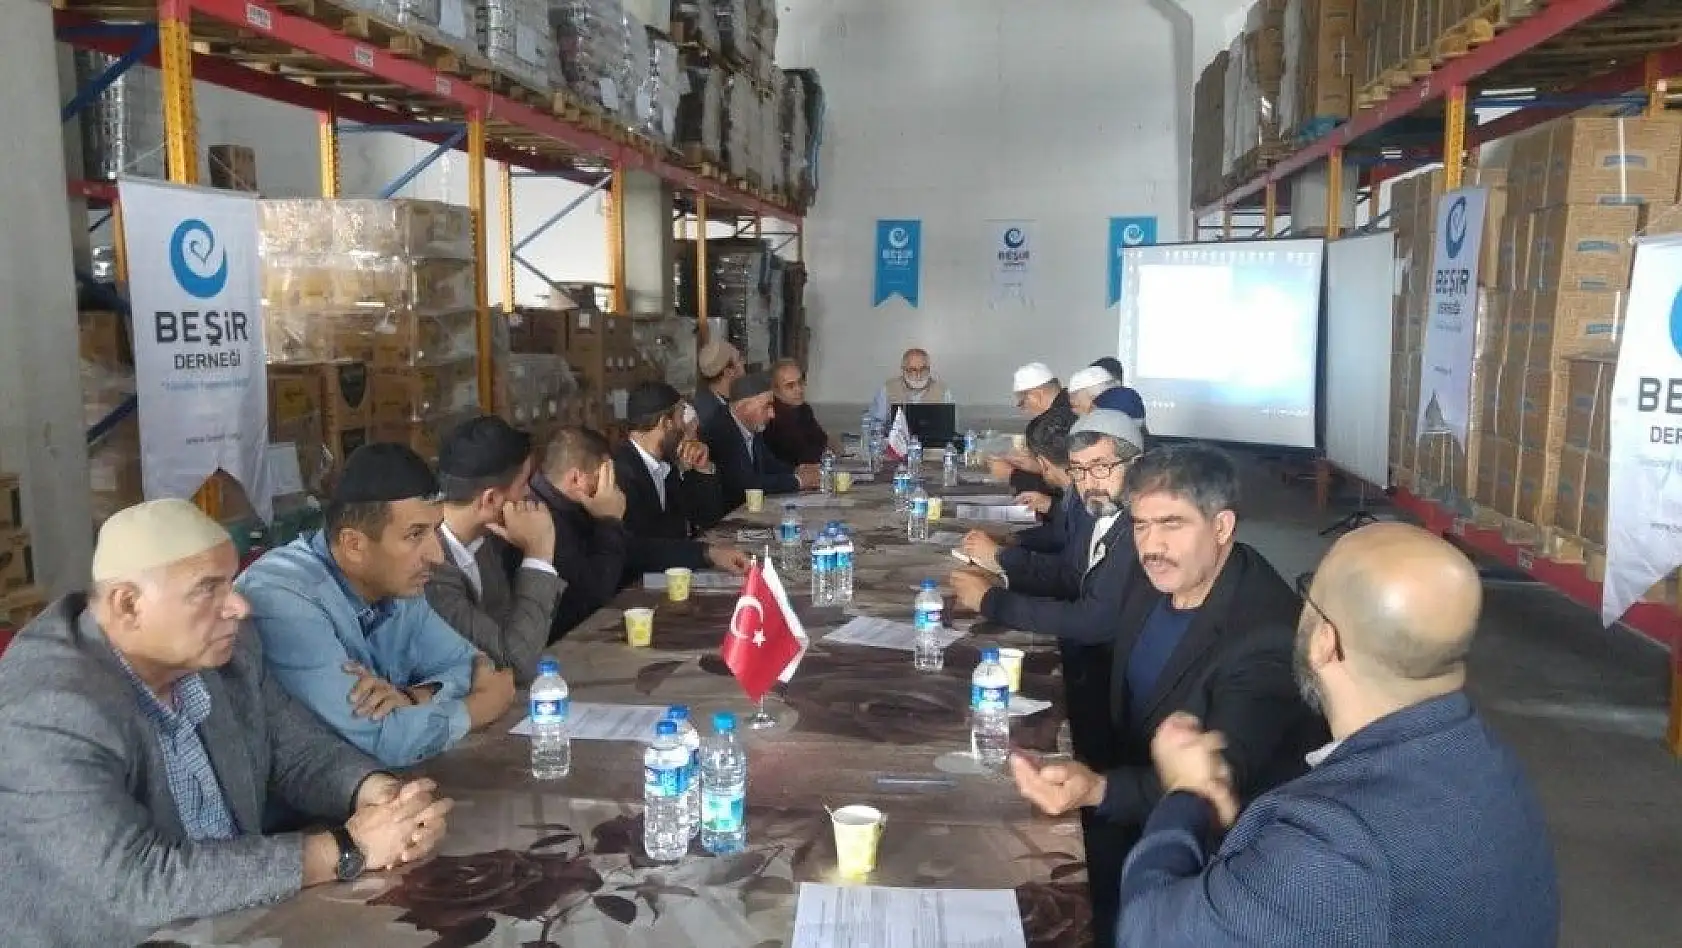 Beşir Derneği İç Anadolu Bölge Deposu Kayseri'ye taşındı
